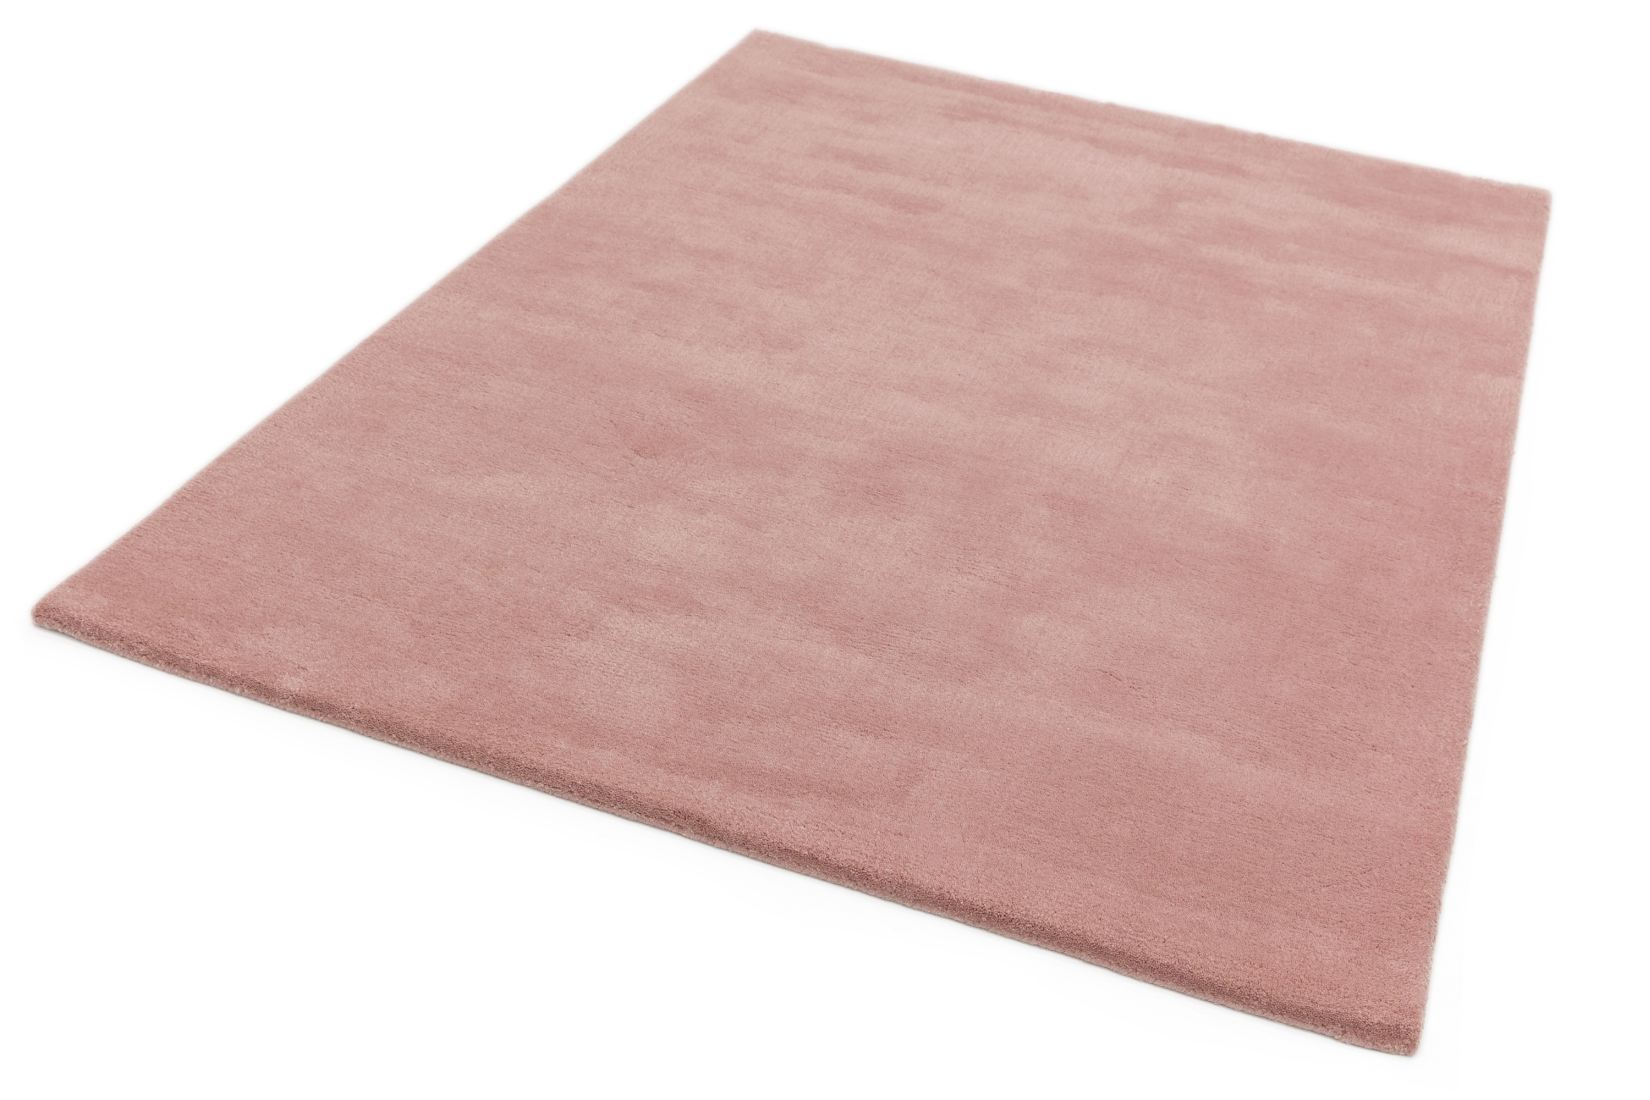 Aran Luxurious Wool & Viscose Rug - Rose Pink